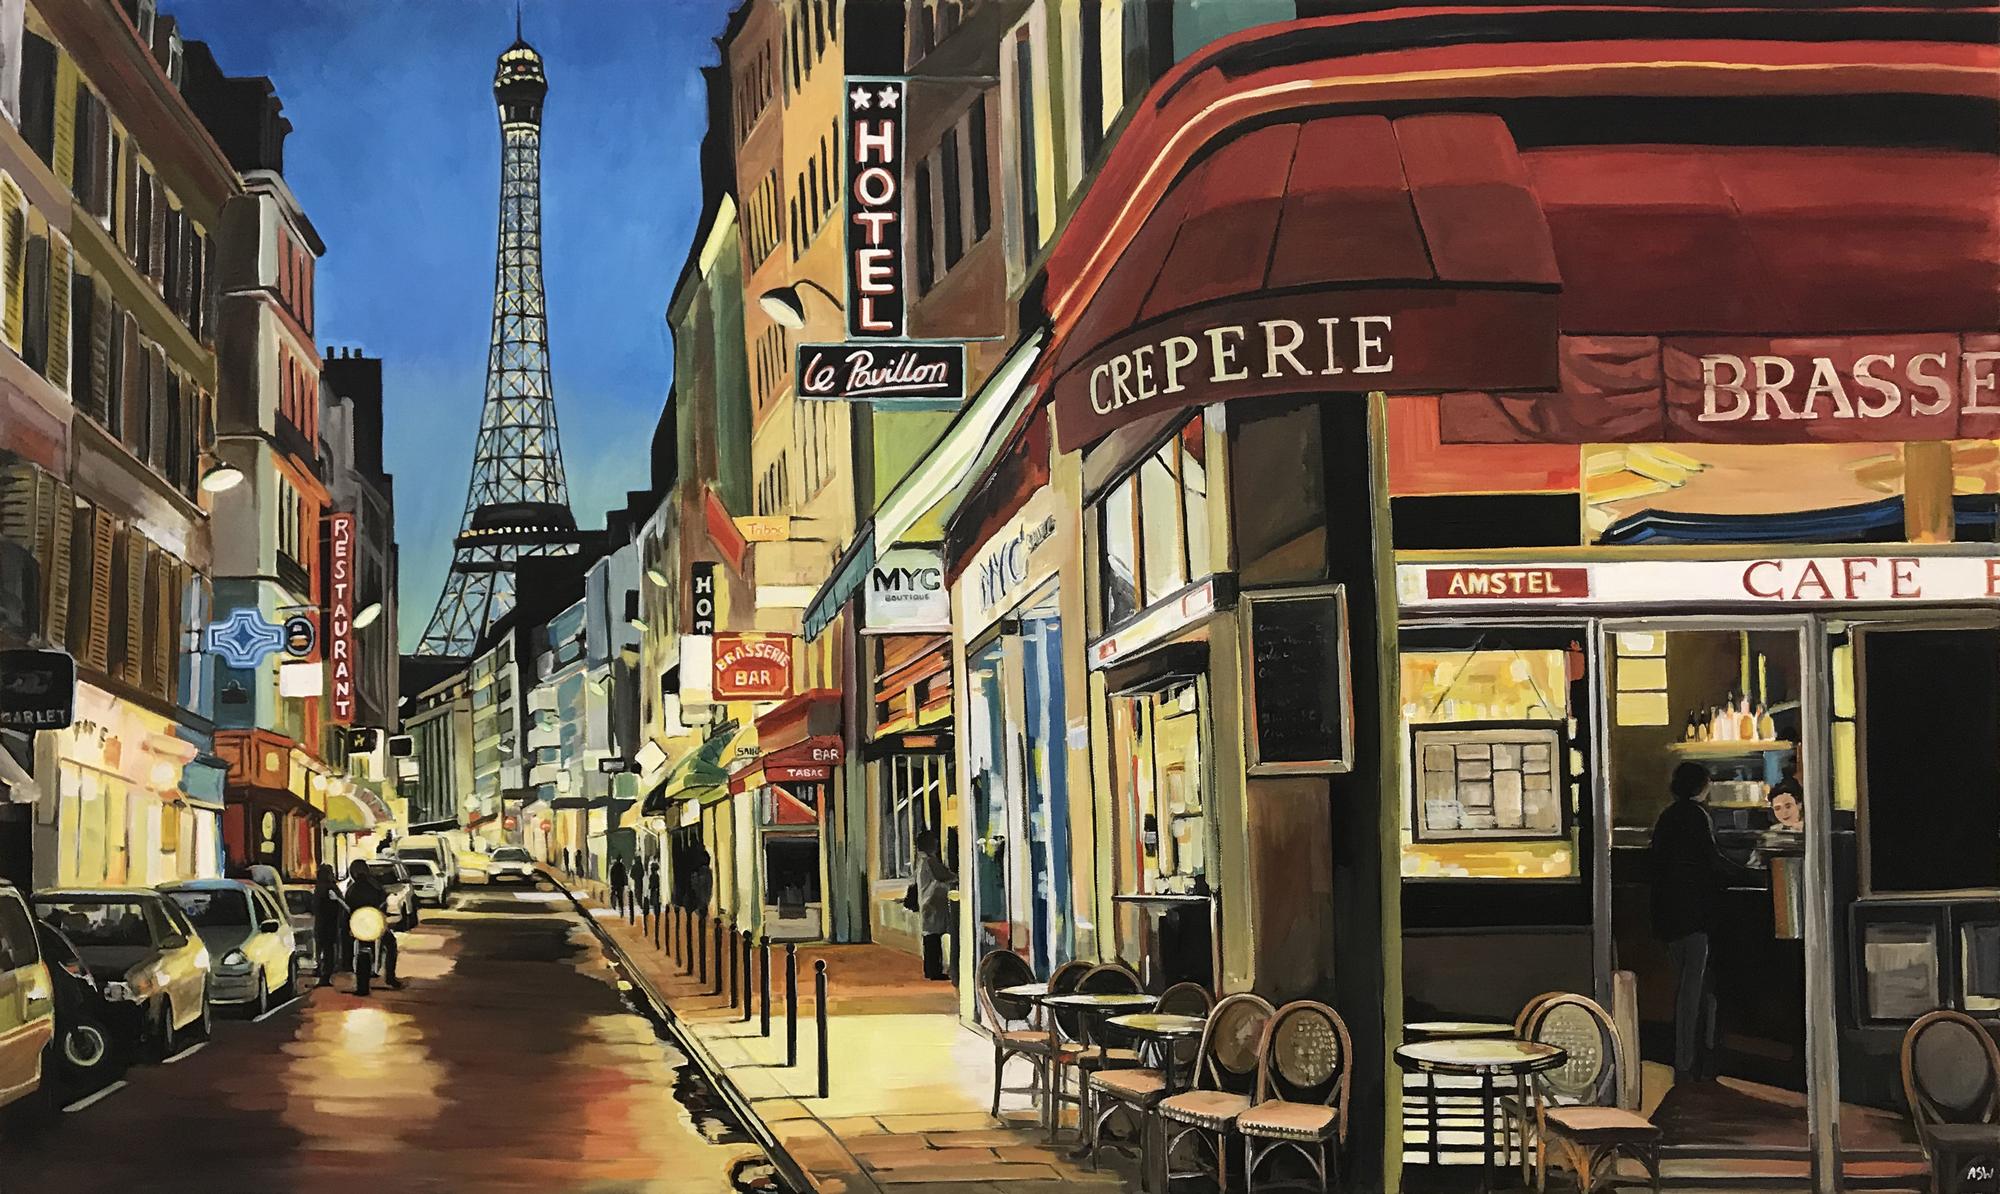 Paris Café avec Tour Eiffel France Impression en édition limitée d'une peinture figurative de paysage urbain réalisée par Angela Wakefield, artiste britannique de premier plan dans le domaine du paysage urbain. 

L'impression mesure 16 x 9.5 pouces